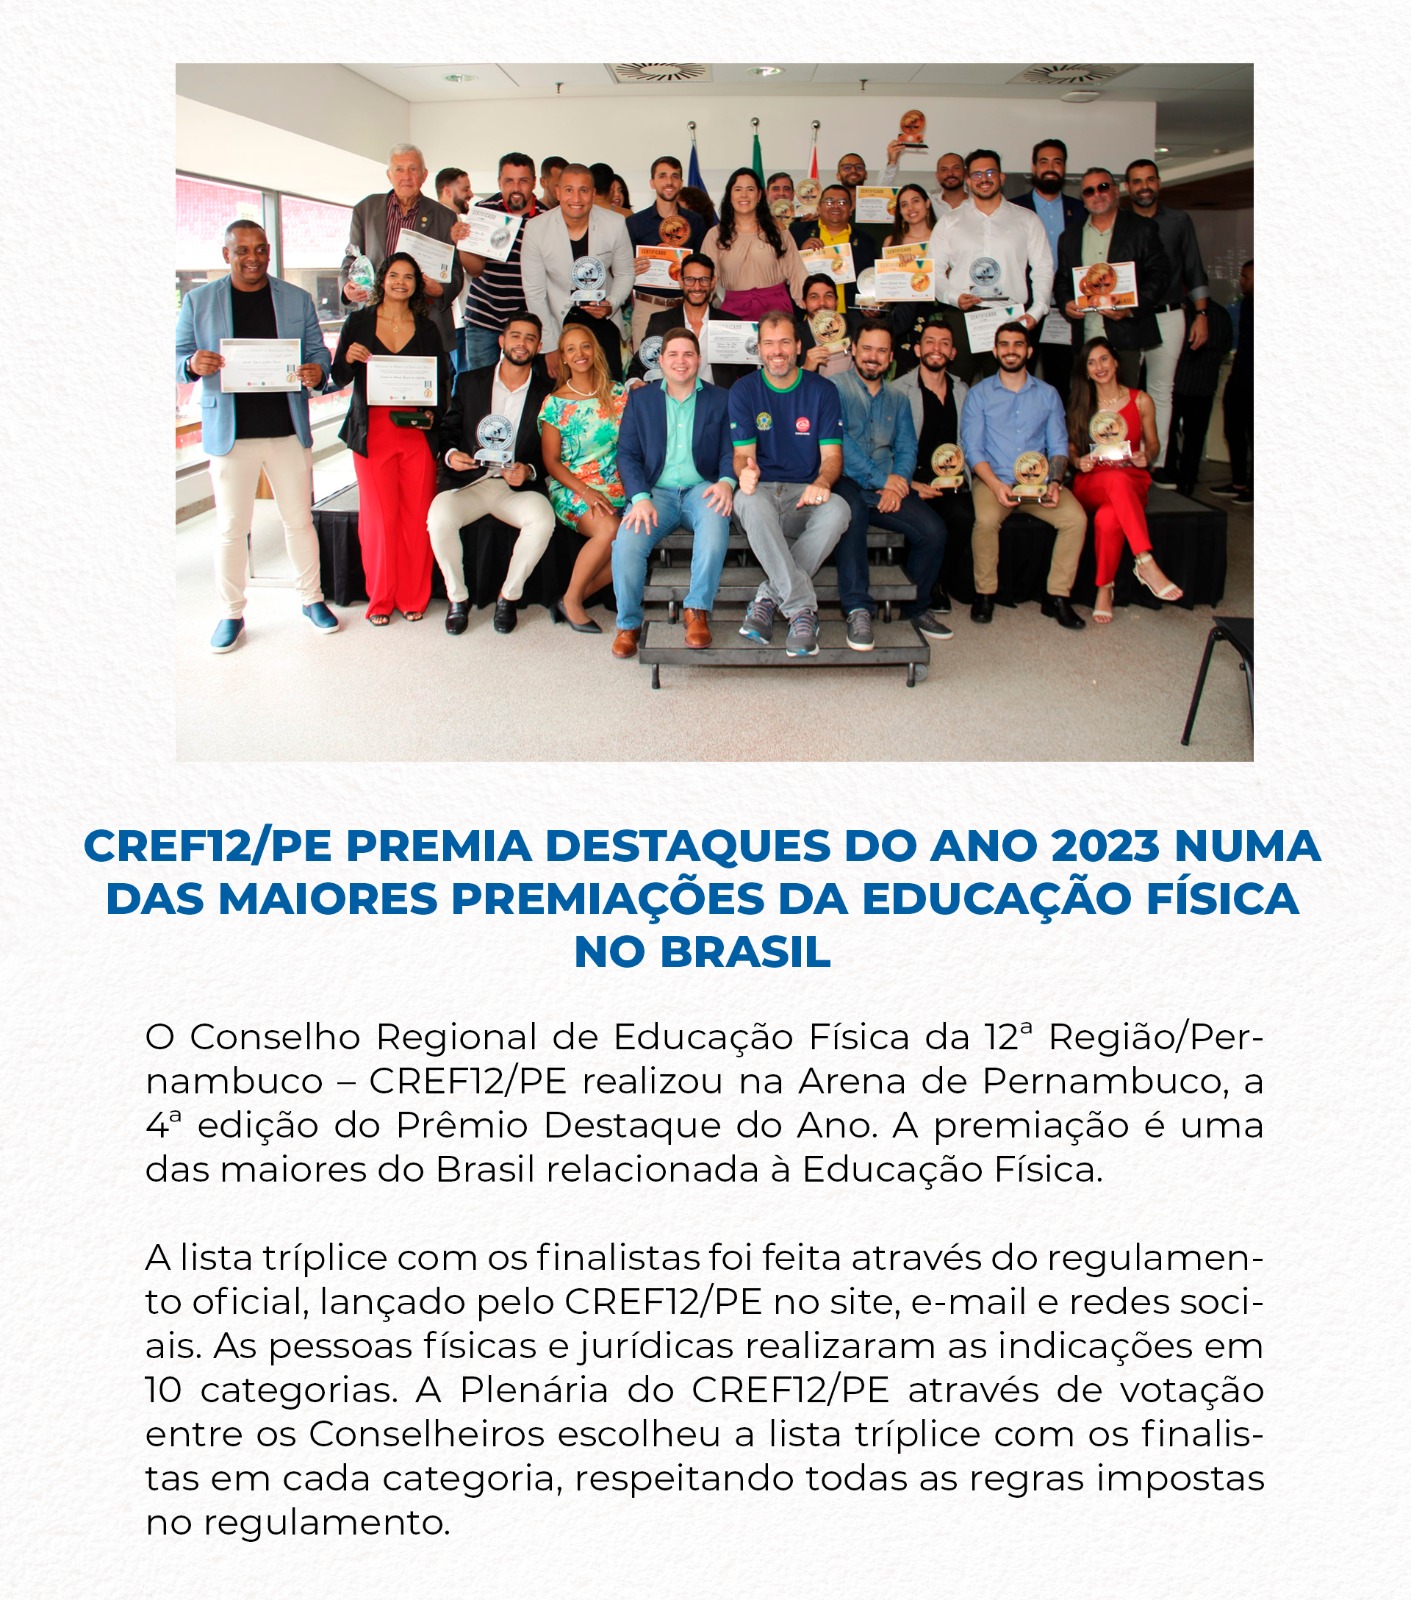 CREF12/PE premia Destaques do Ano 2023 numa das maiores premiações da Educação Física no Brasil